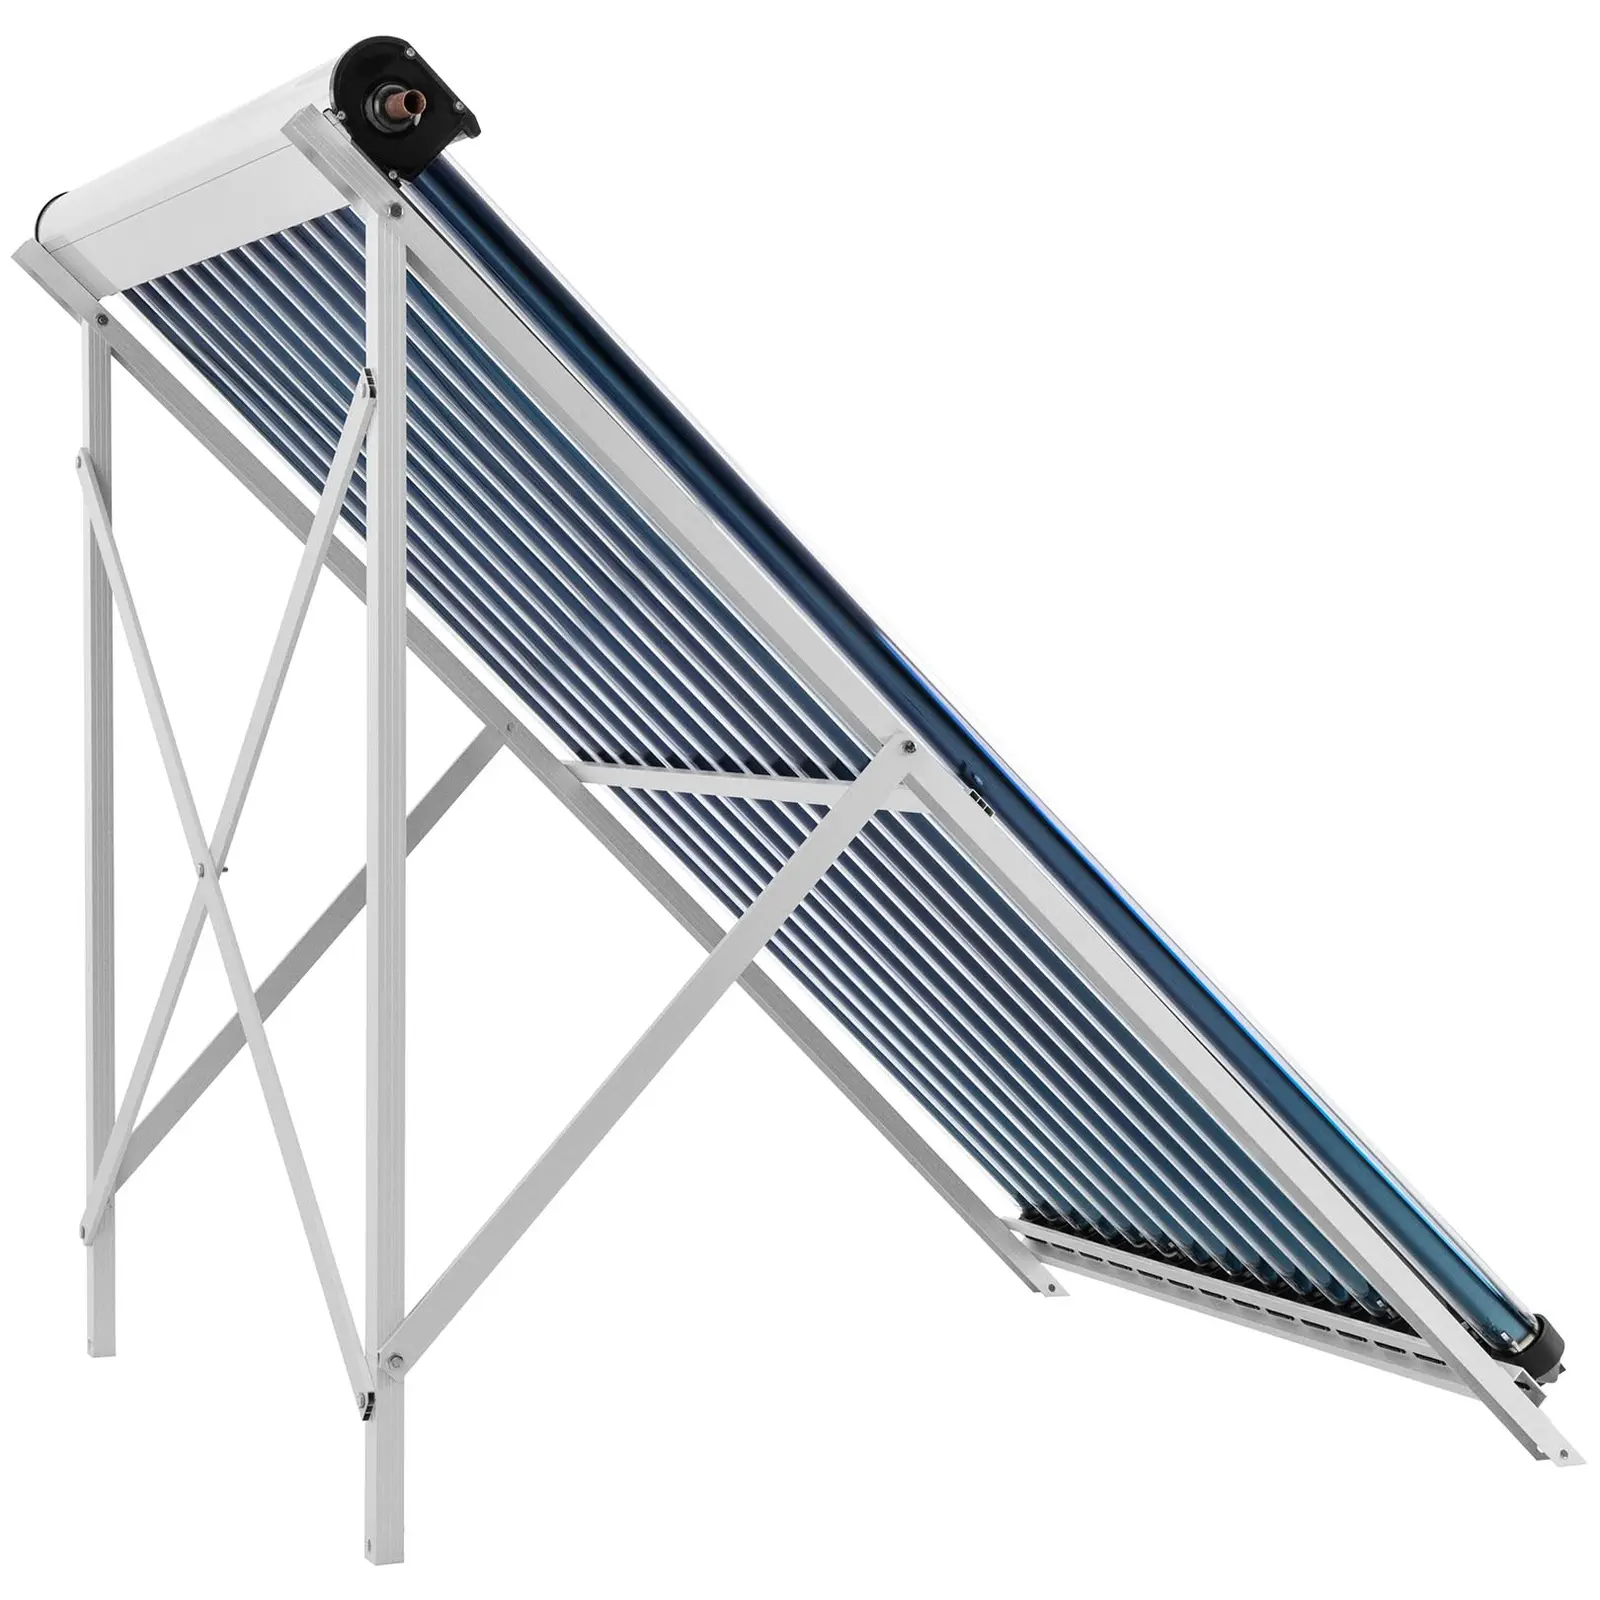 Pannello solare termico - 15 tubi - 120 - 150 L - 1.2 m² - -45 - 90 °C